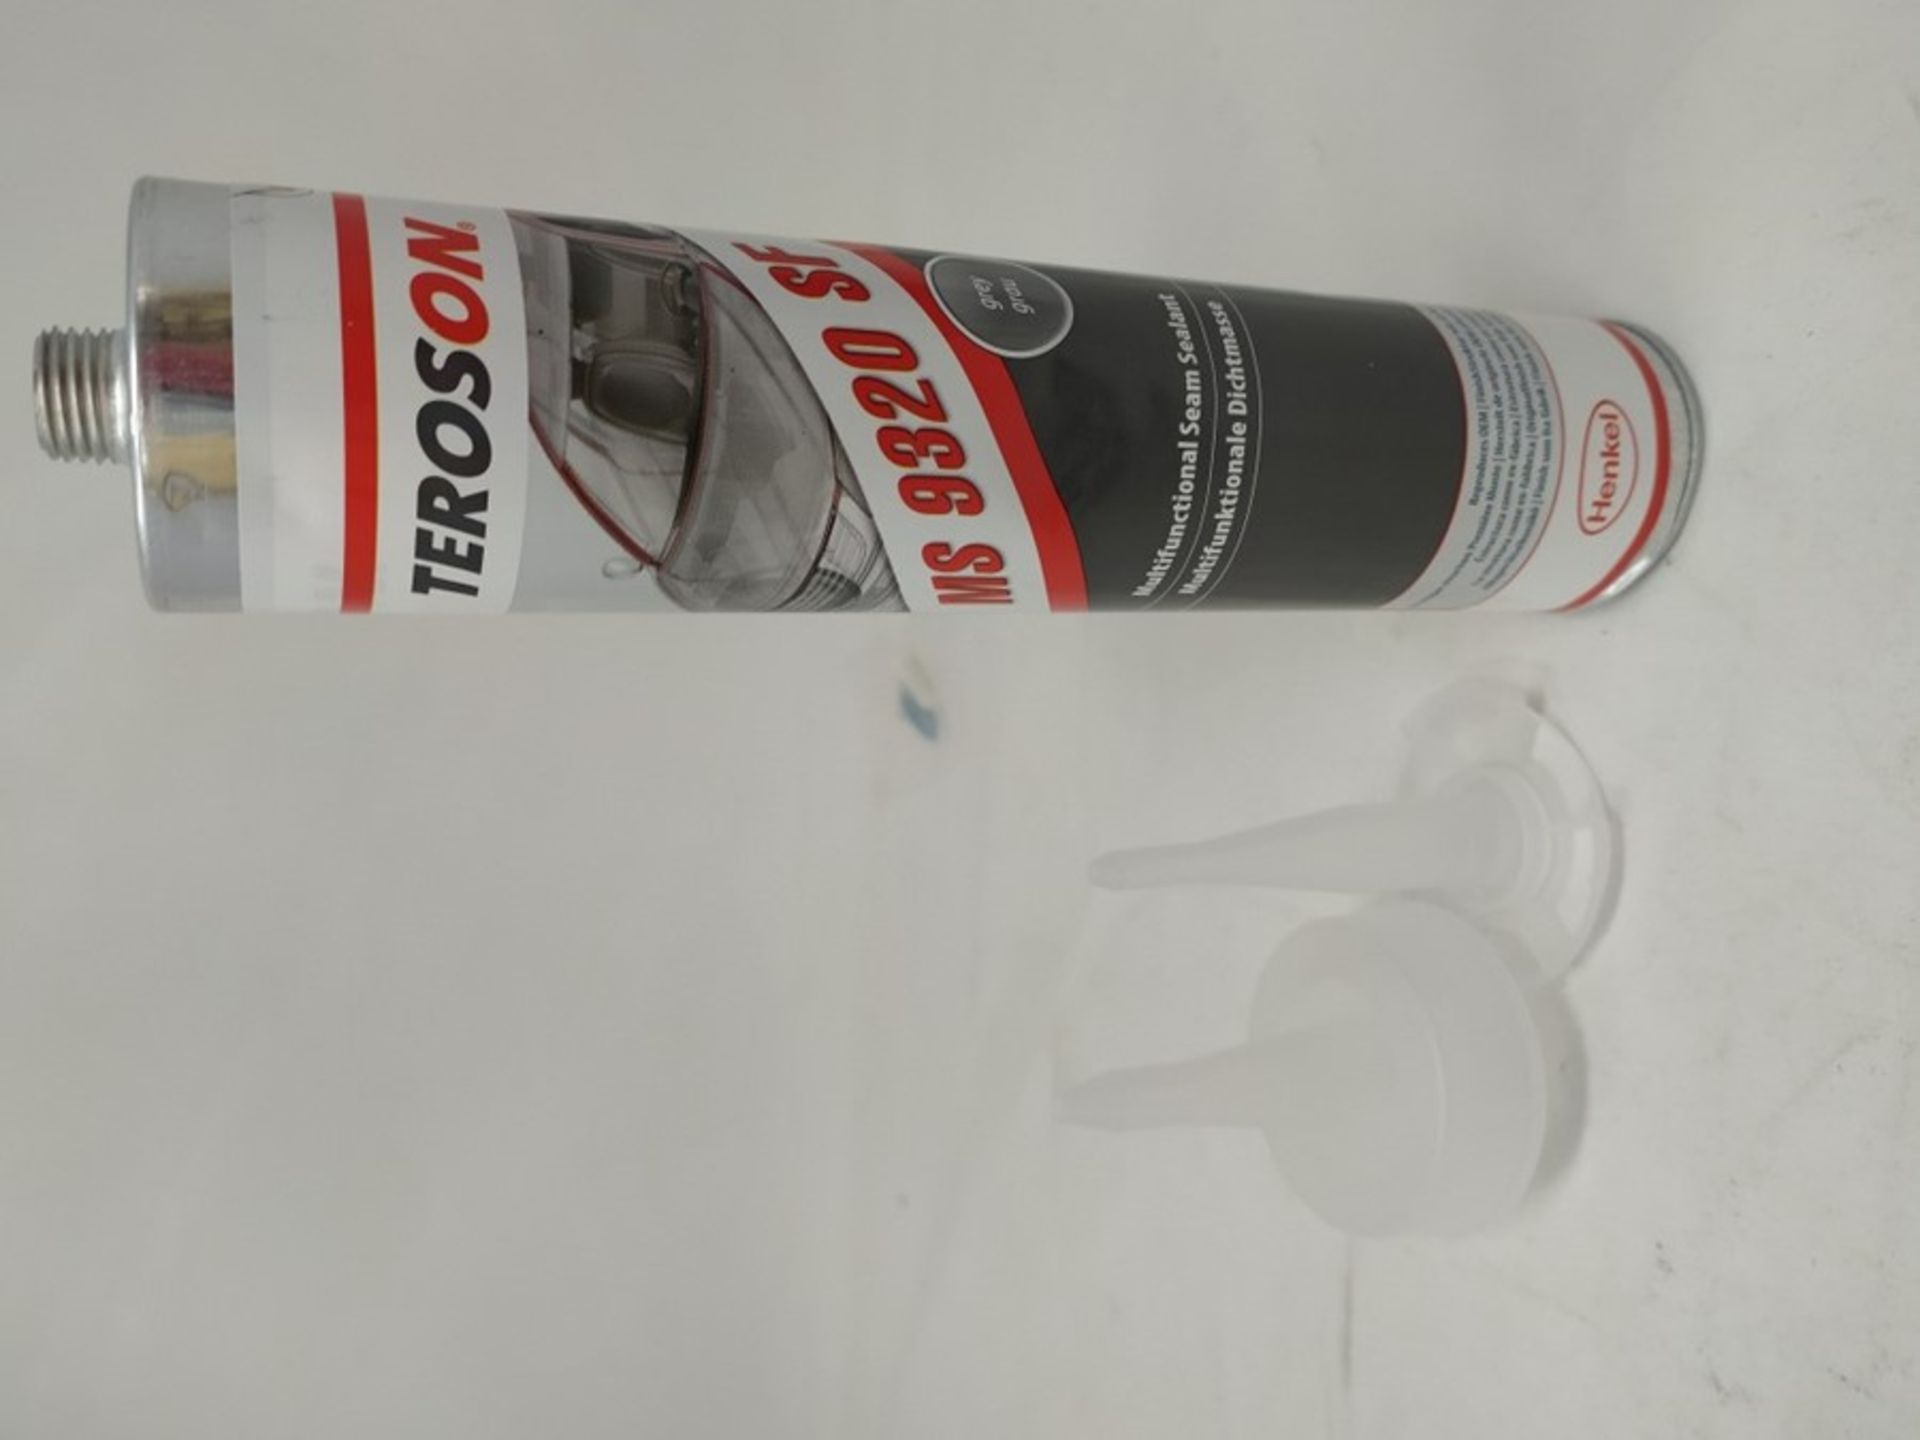 TEROSON 1357960 Seam Sealing, 310 ml, Grey - Image 2 of 2